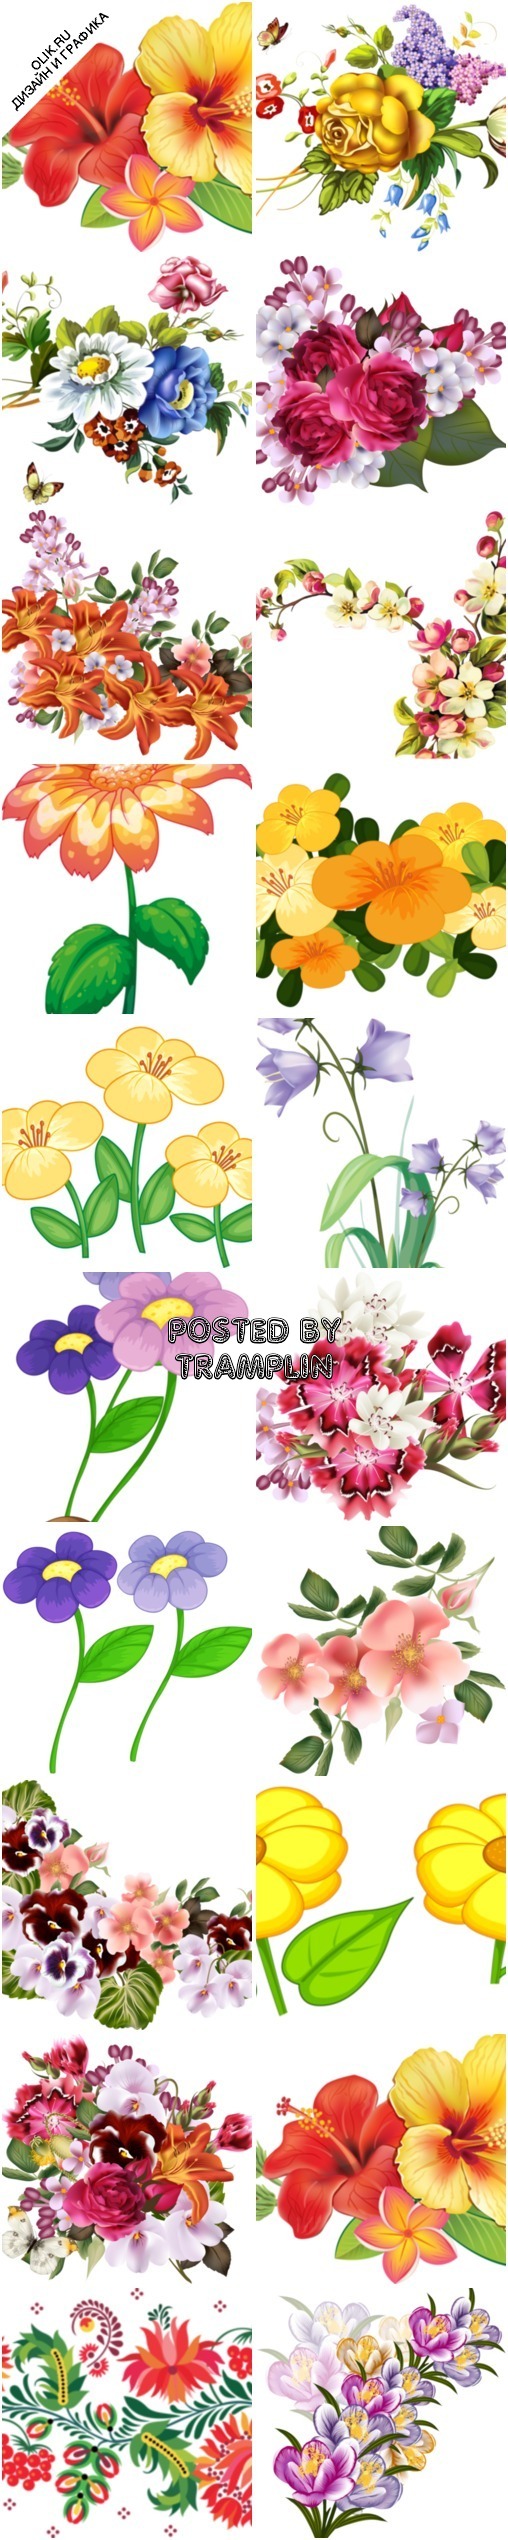 Яркие цветы картинки растровые на прозрачном фоне в формате PNG